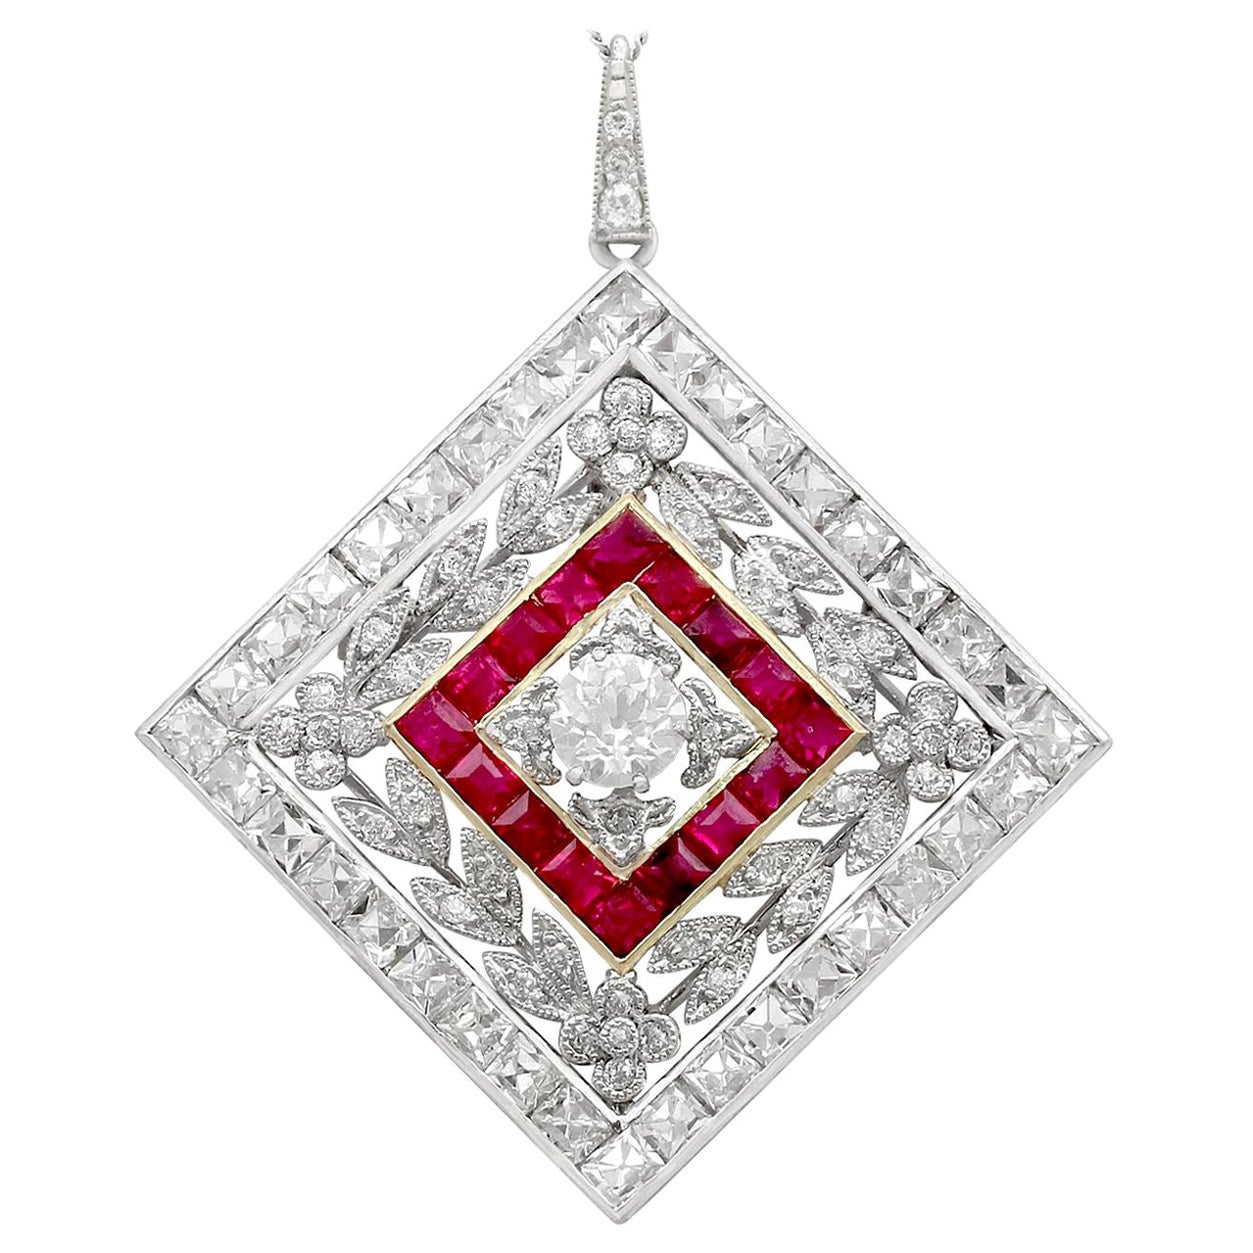 Antike 1900er Jahre Rubin 3,48 Karat Diamanten Gold Platin Anhänger Brosche